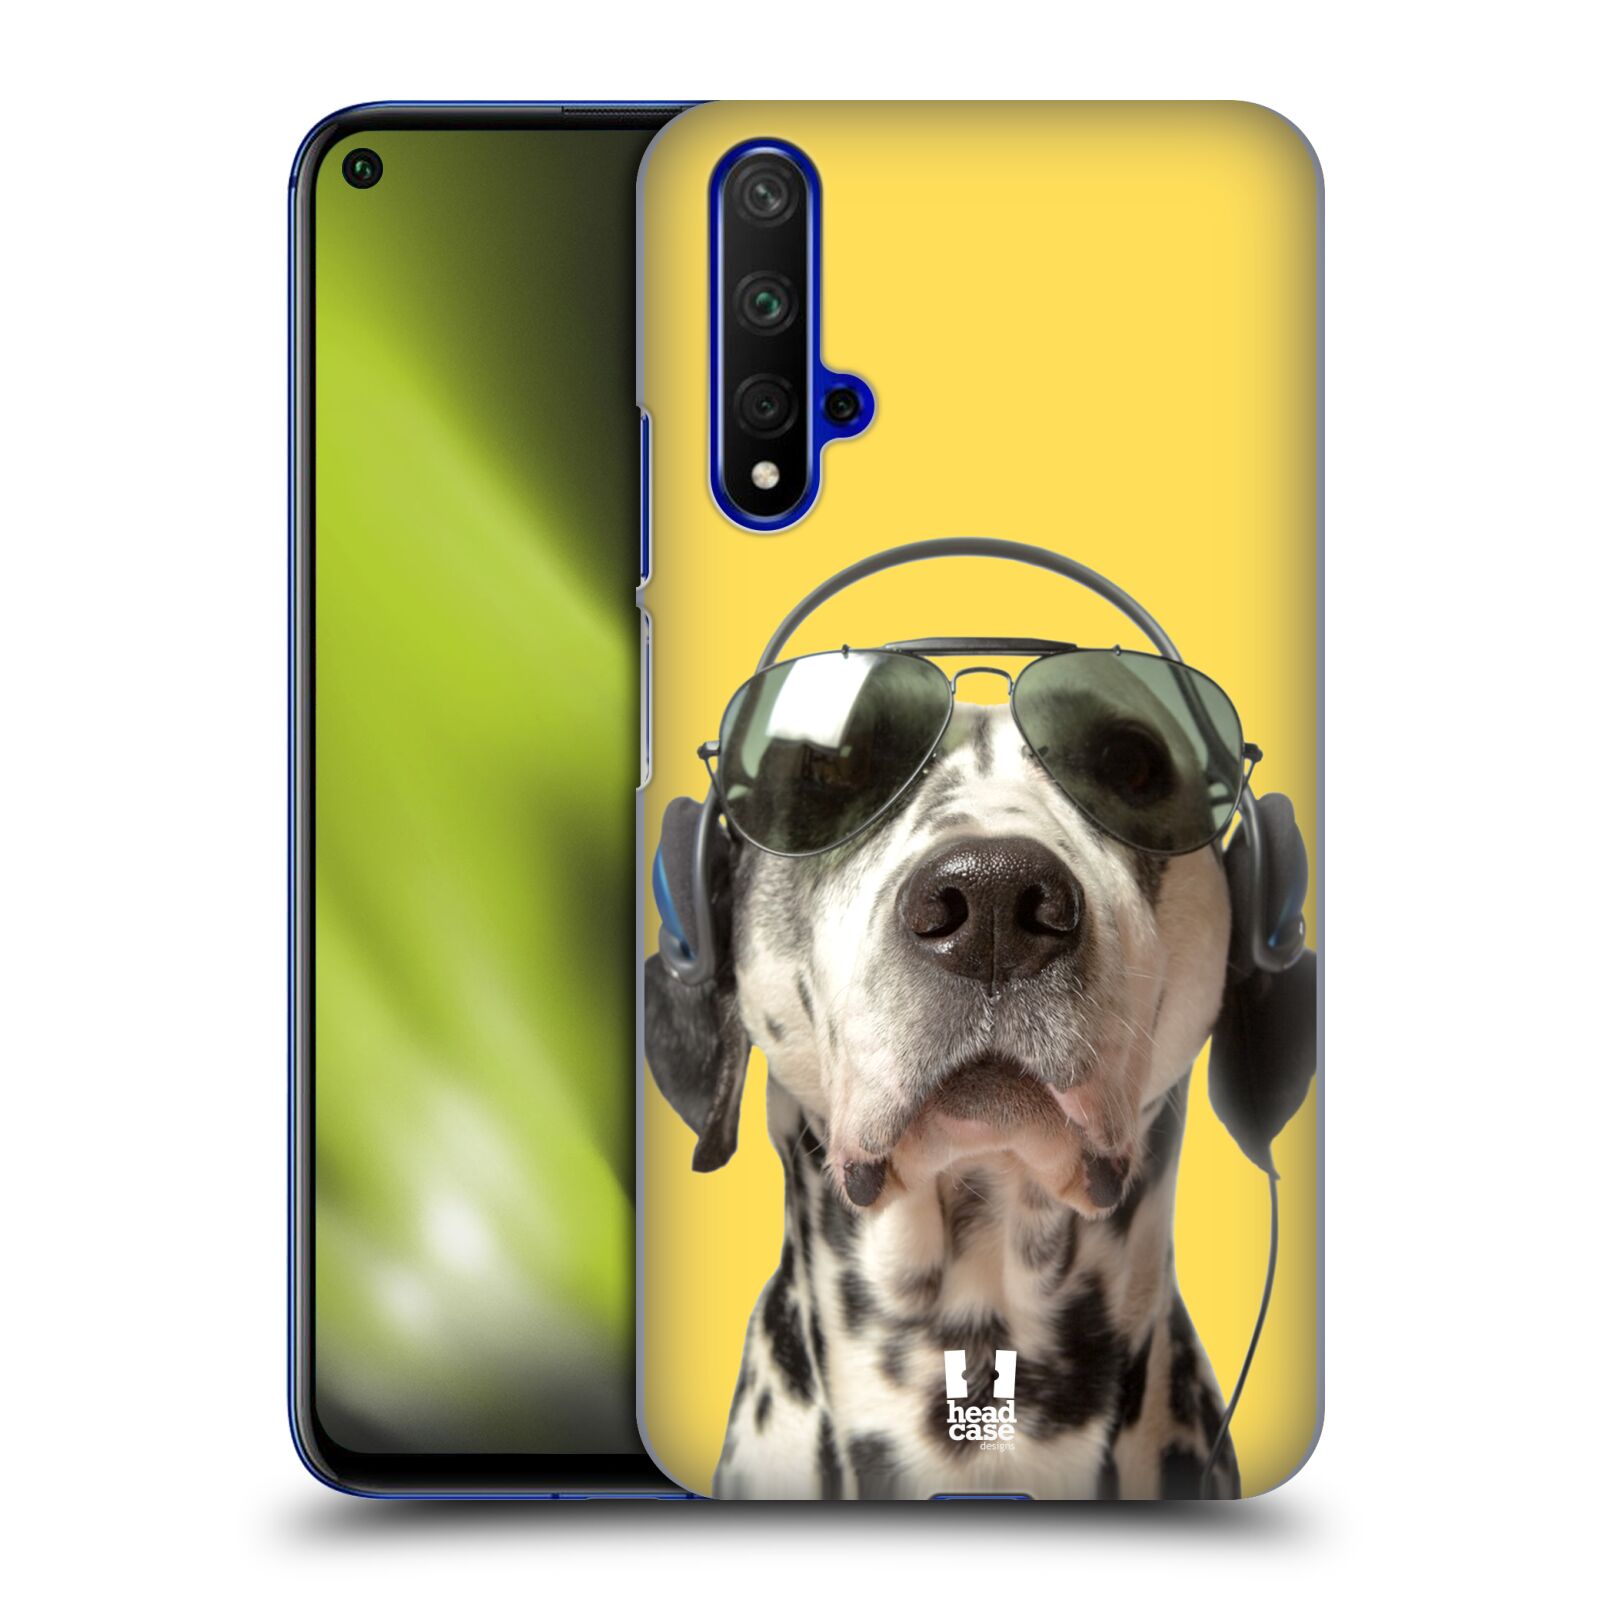 Pouzdro na mobil Honor 20 - HEAD CASE - vzor Legrační zvířátka dalmatin se sluchátky žlutá